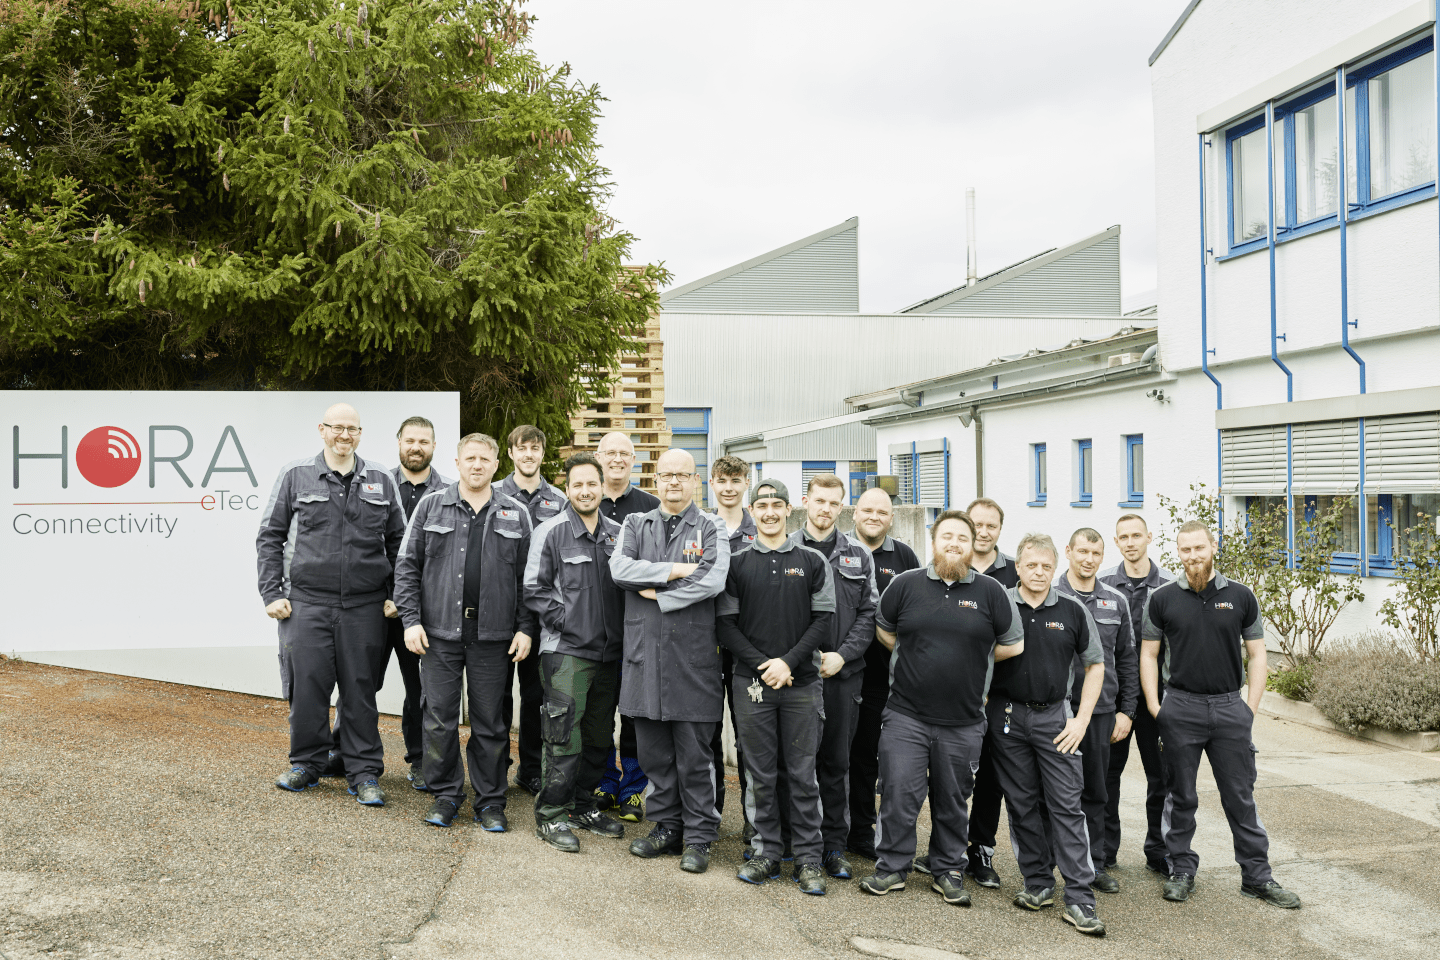 Gruppenfoto Mitarbeiter HORA eTec Connectivity vor dem Firmengebäude in Eberdingen